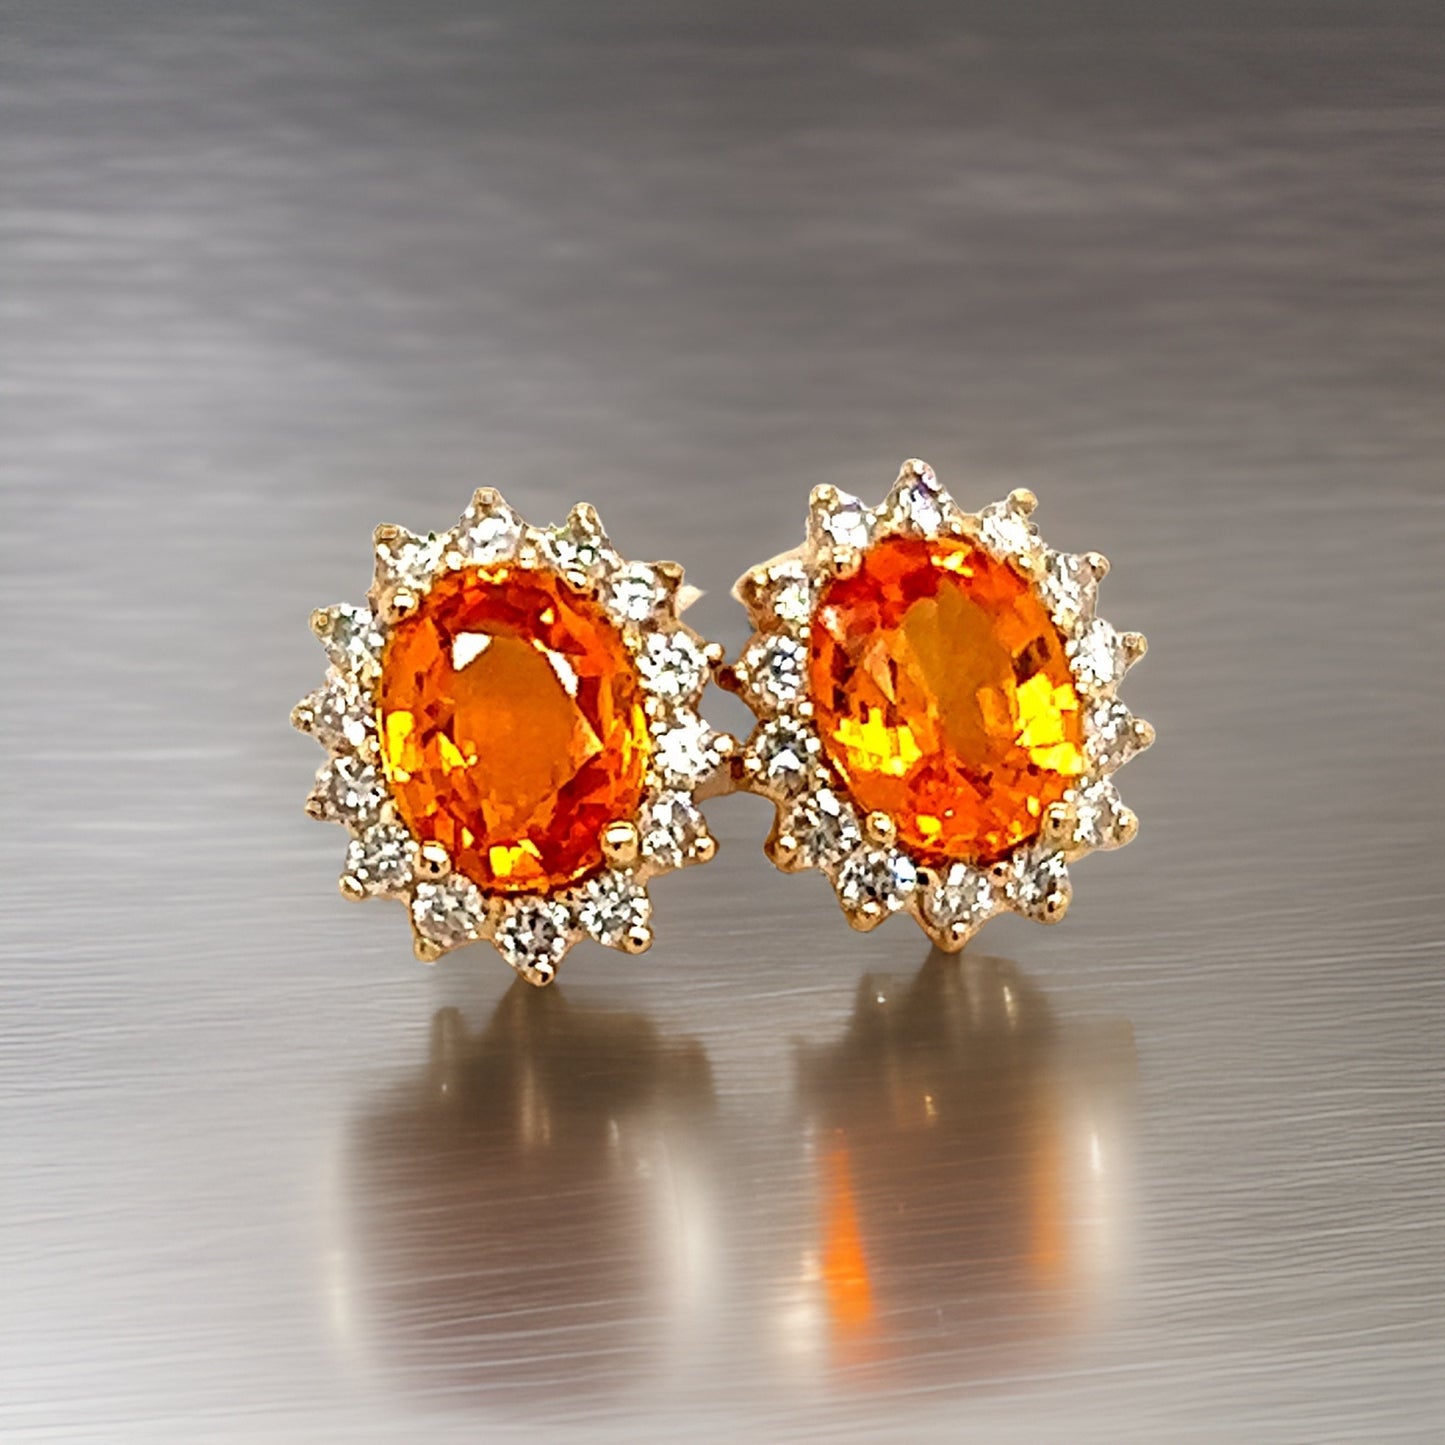 Natural Sapphire Diamond Stud Earrings 14k Gold 3.5 TCW Certified $5,950 211886 - Certified Fine Jewelry